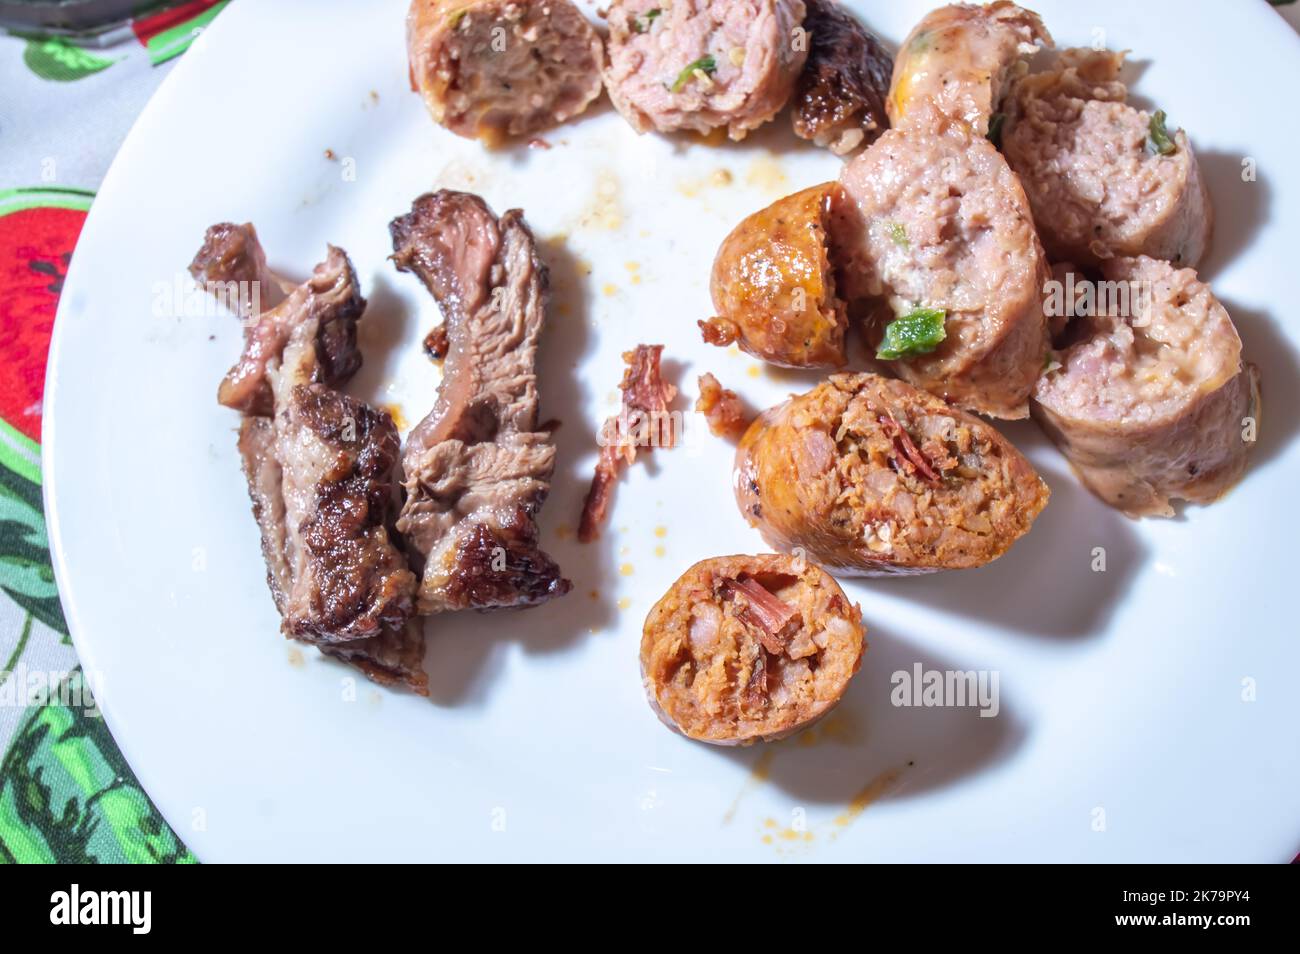 La saucisse rôtie et coupée en tranches sur un plat blanc avec de petits morceaux de viande à côté de la saveur de saucisse est pastrami. Banque D'Images